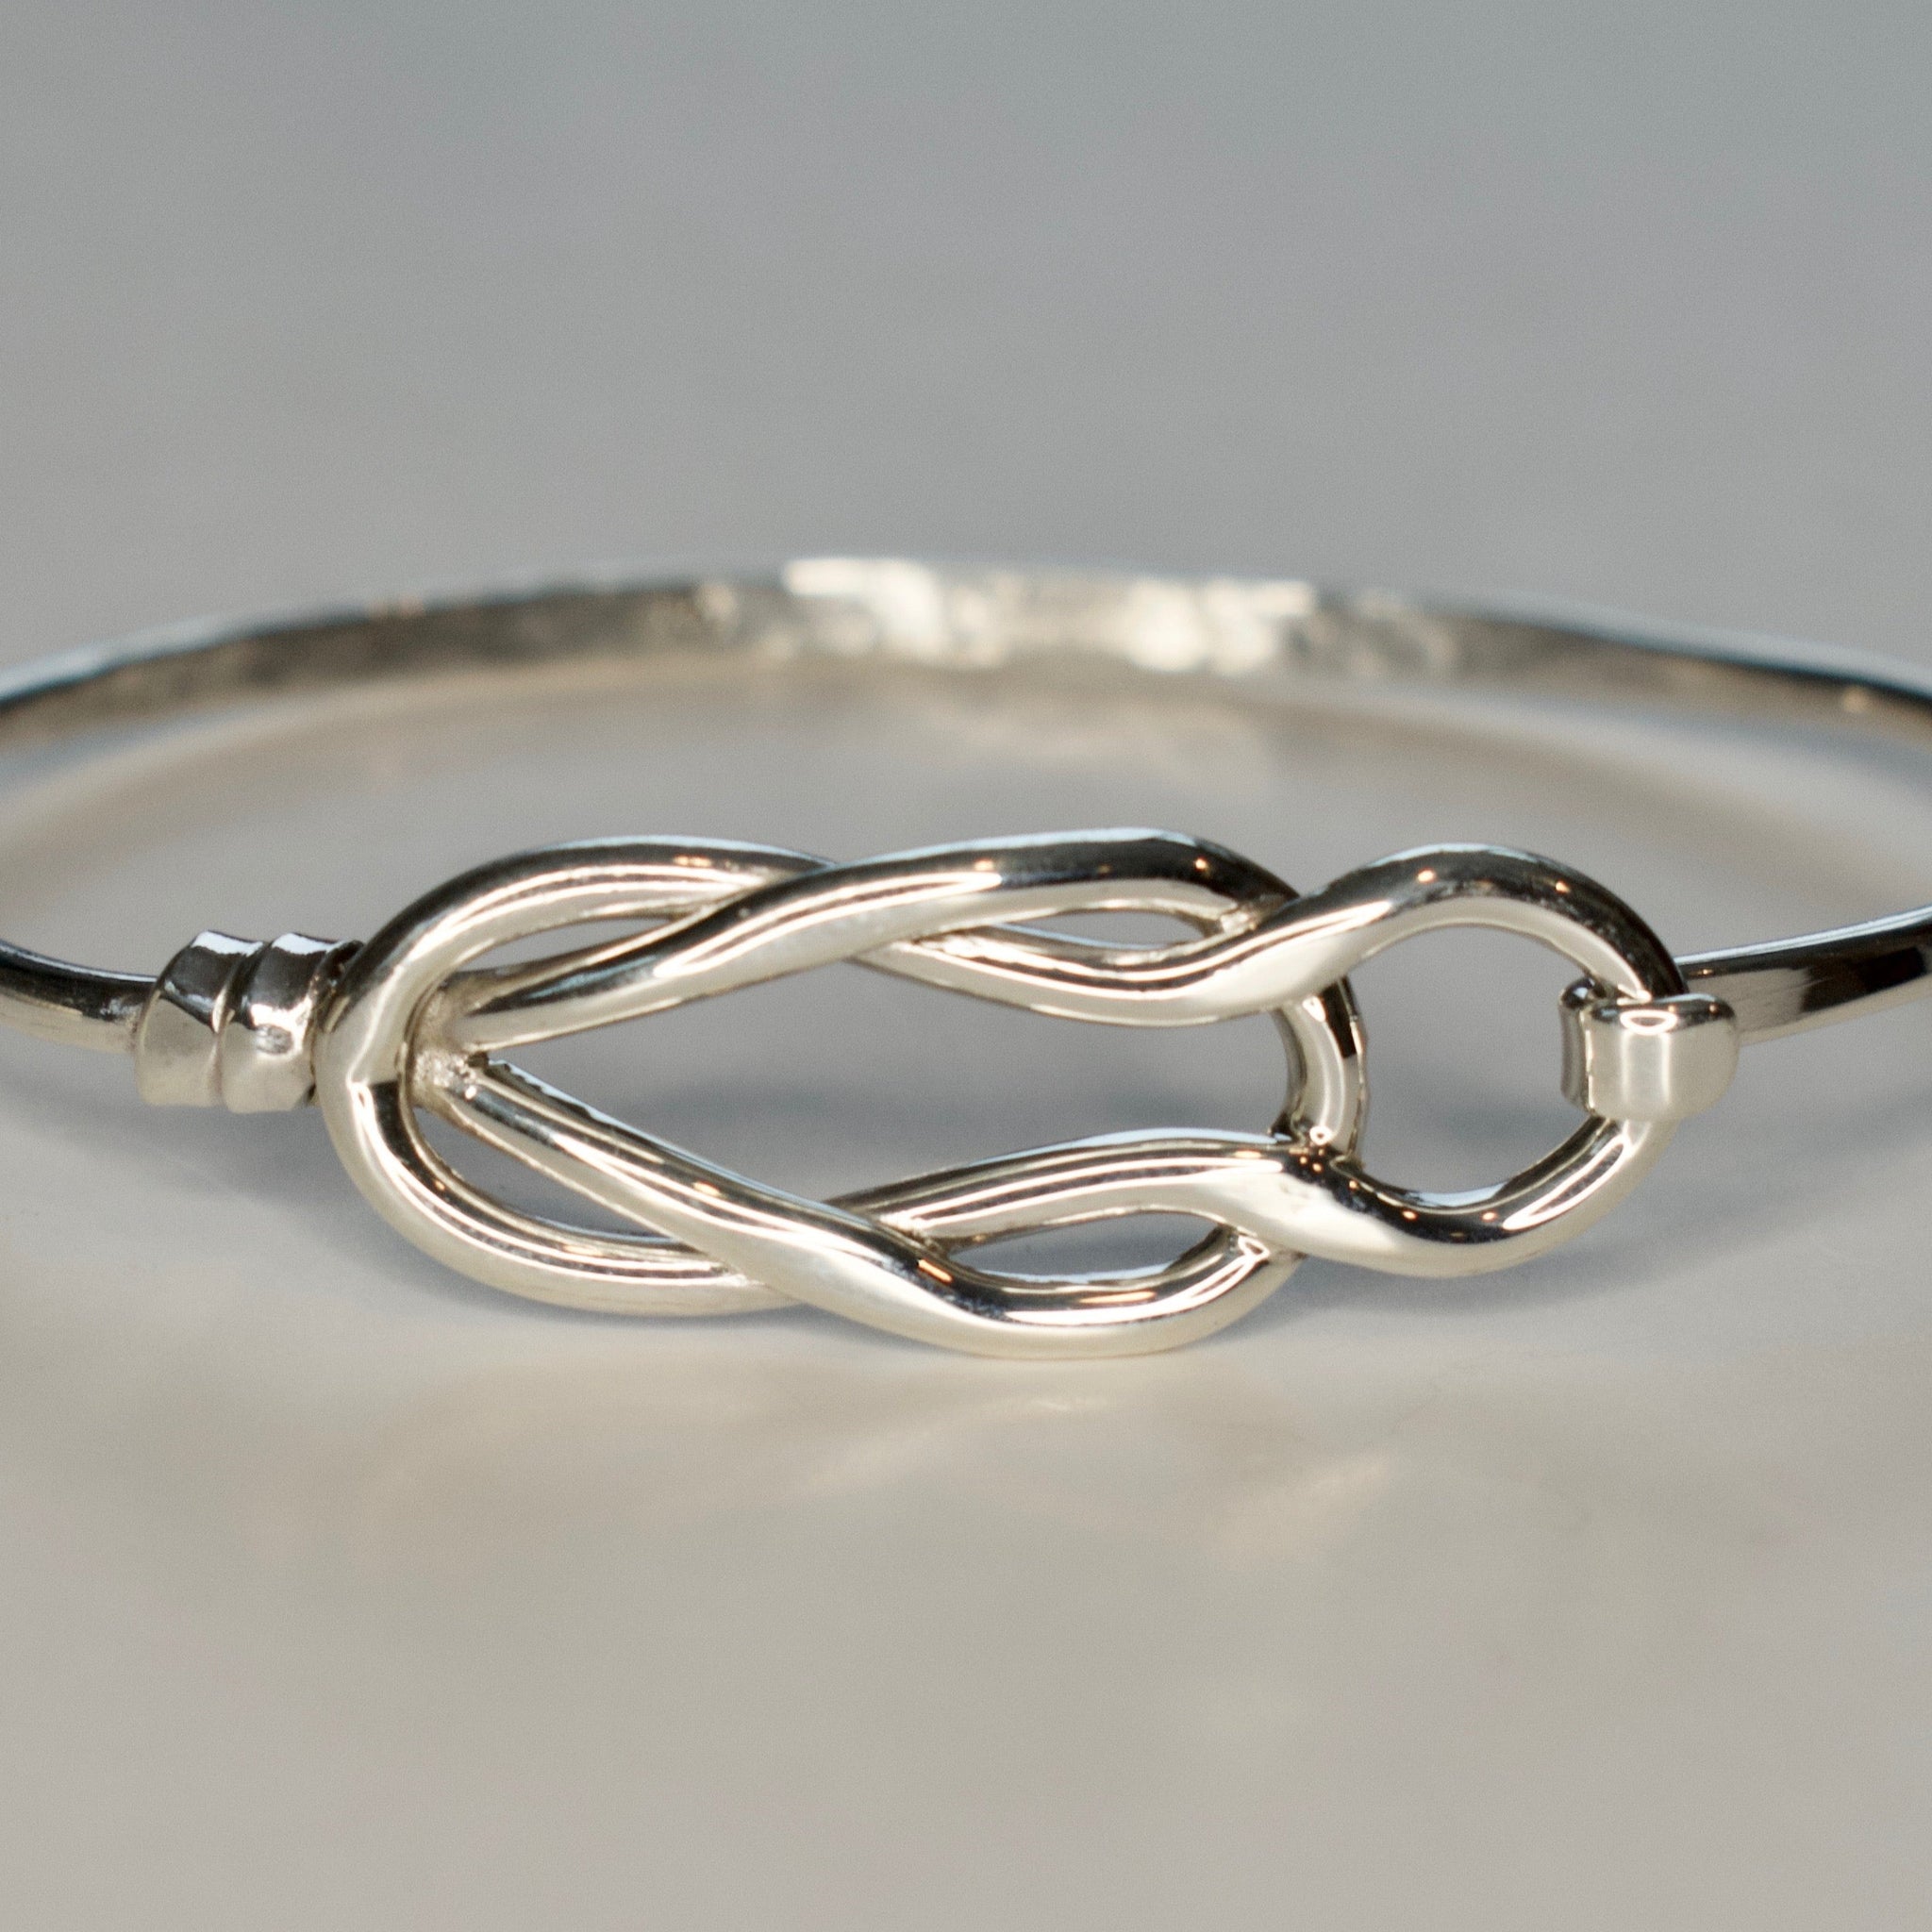 Retro Fashion|retro Silver Fish Knot Bracelet - Allergy-free Copper Chain  For Women